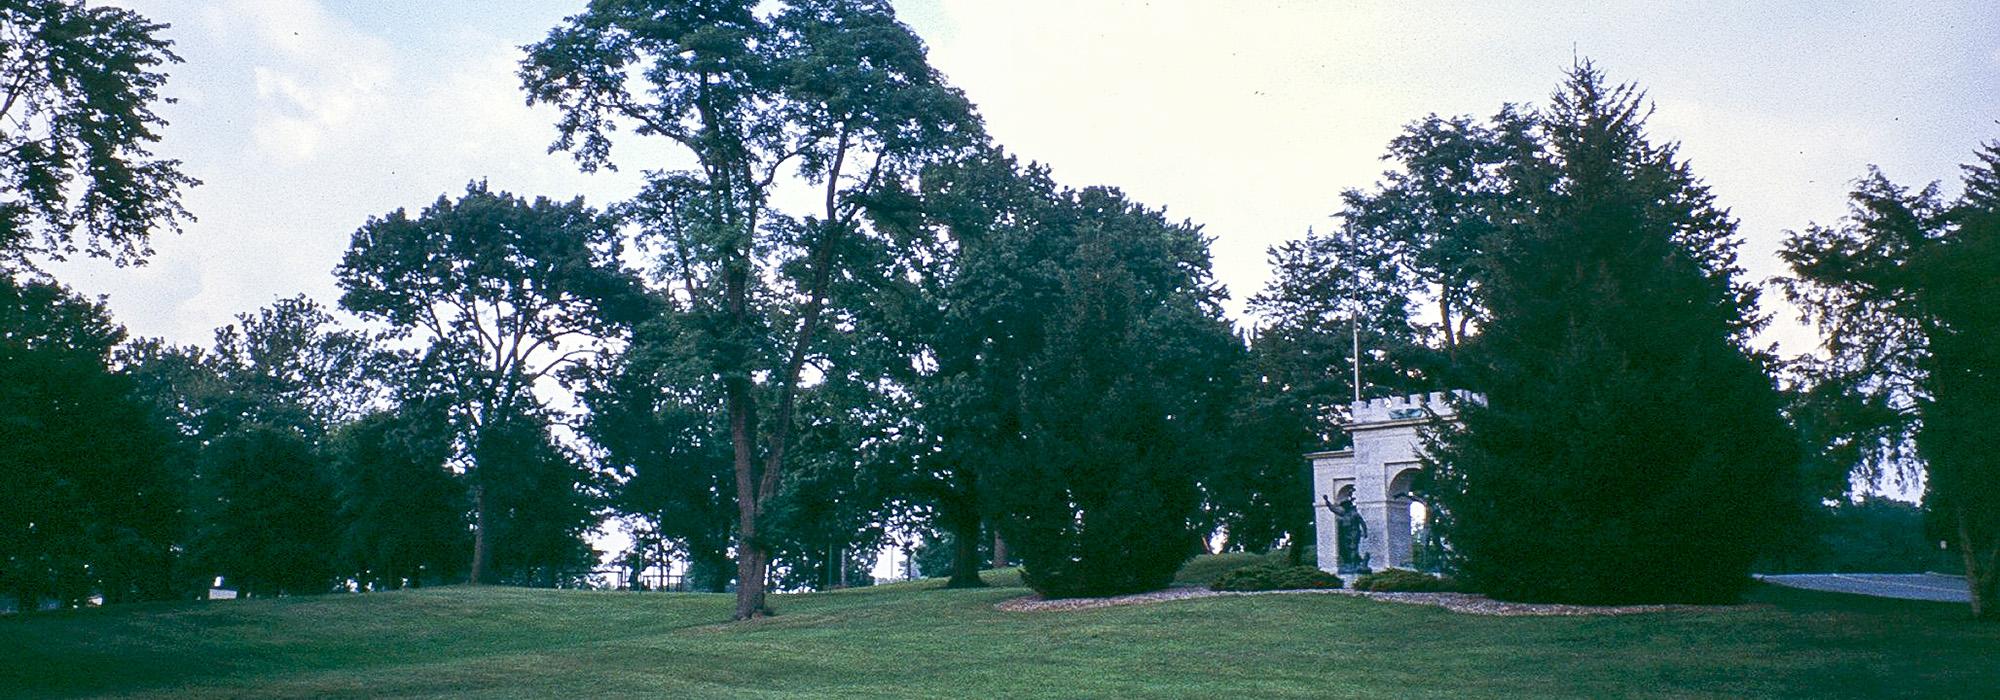 Memorial Park, Fort Wayne, IN